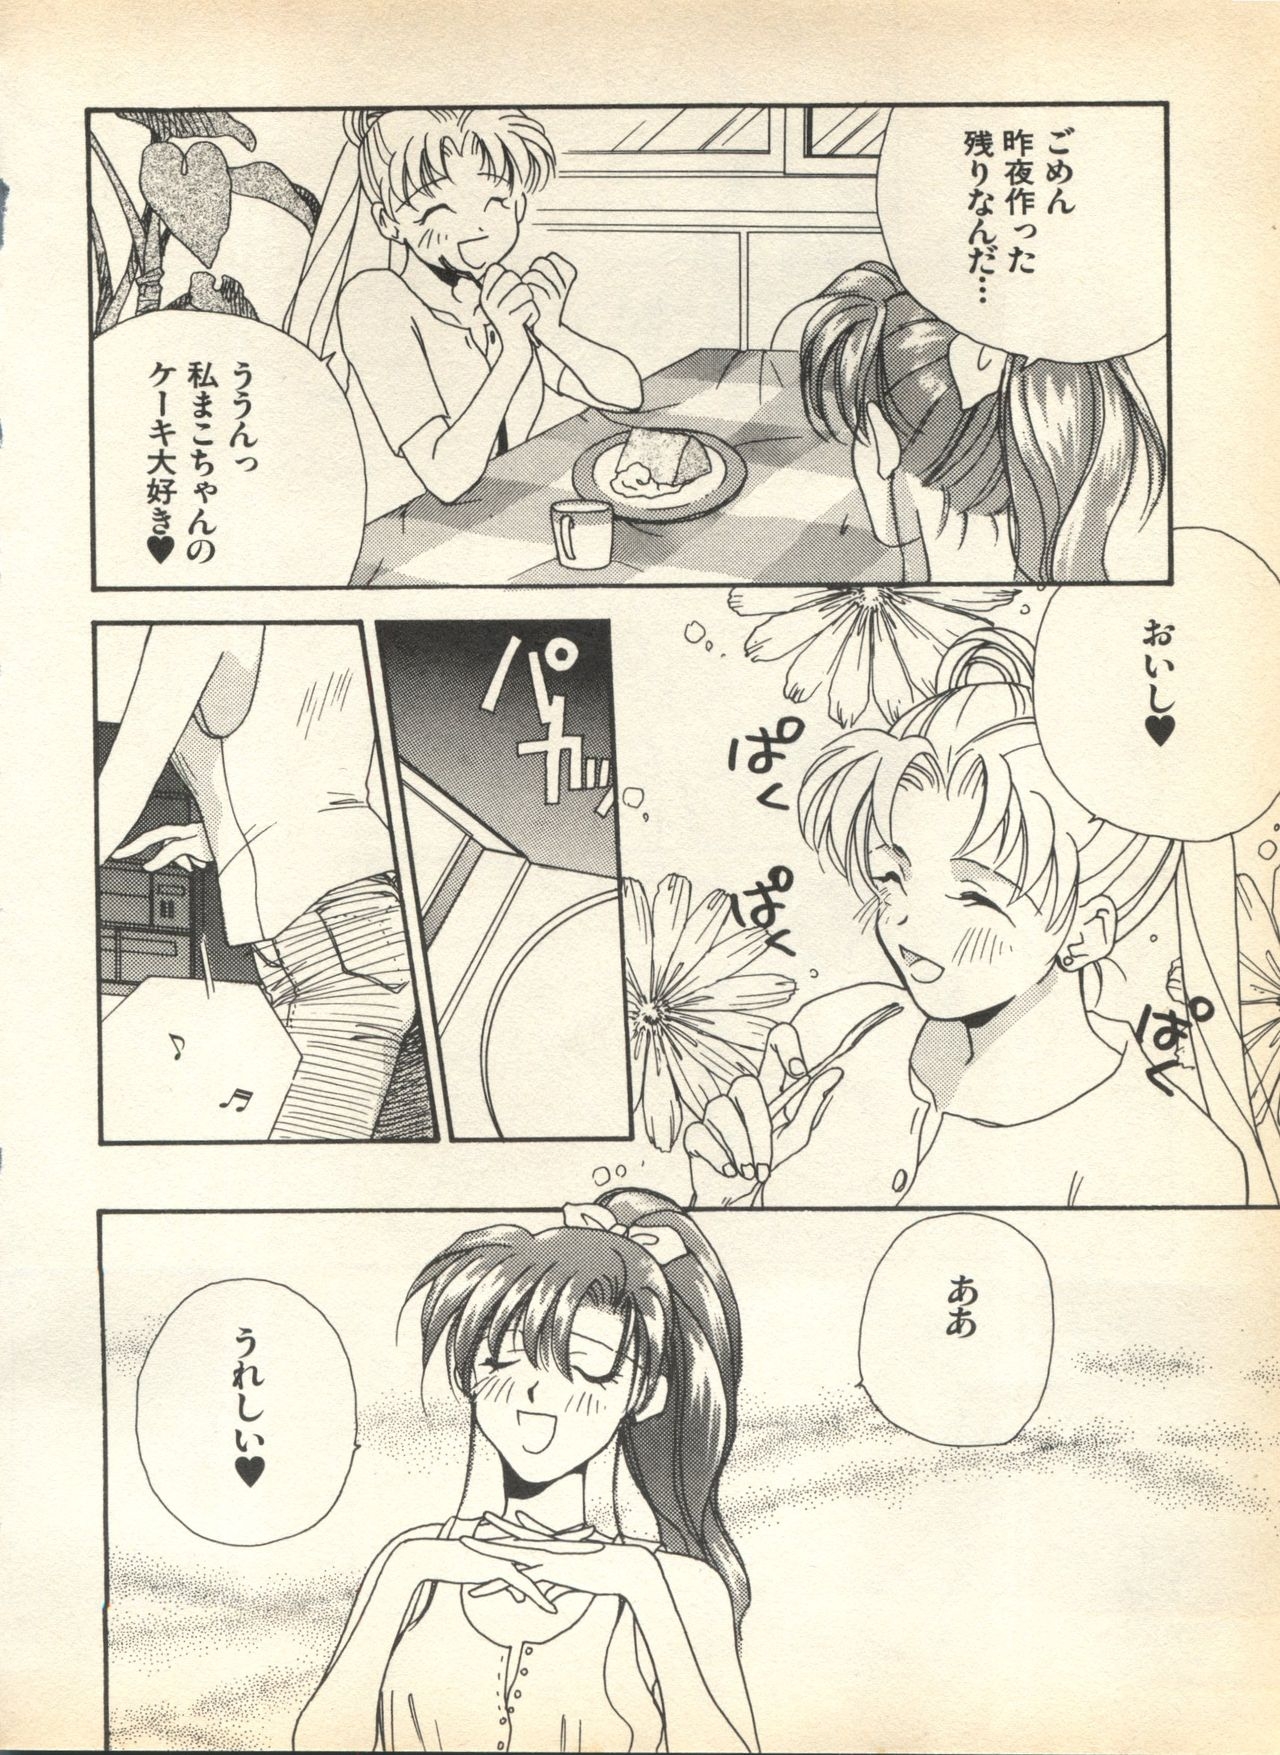 [Anthology] Lunatic Party 7 (Bishoujo Senshi Sailor Moon) 147